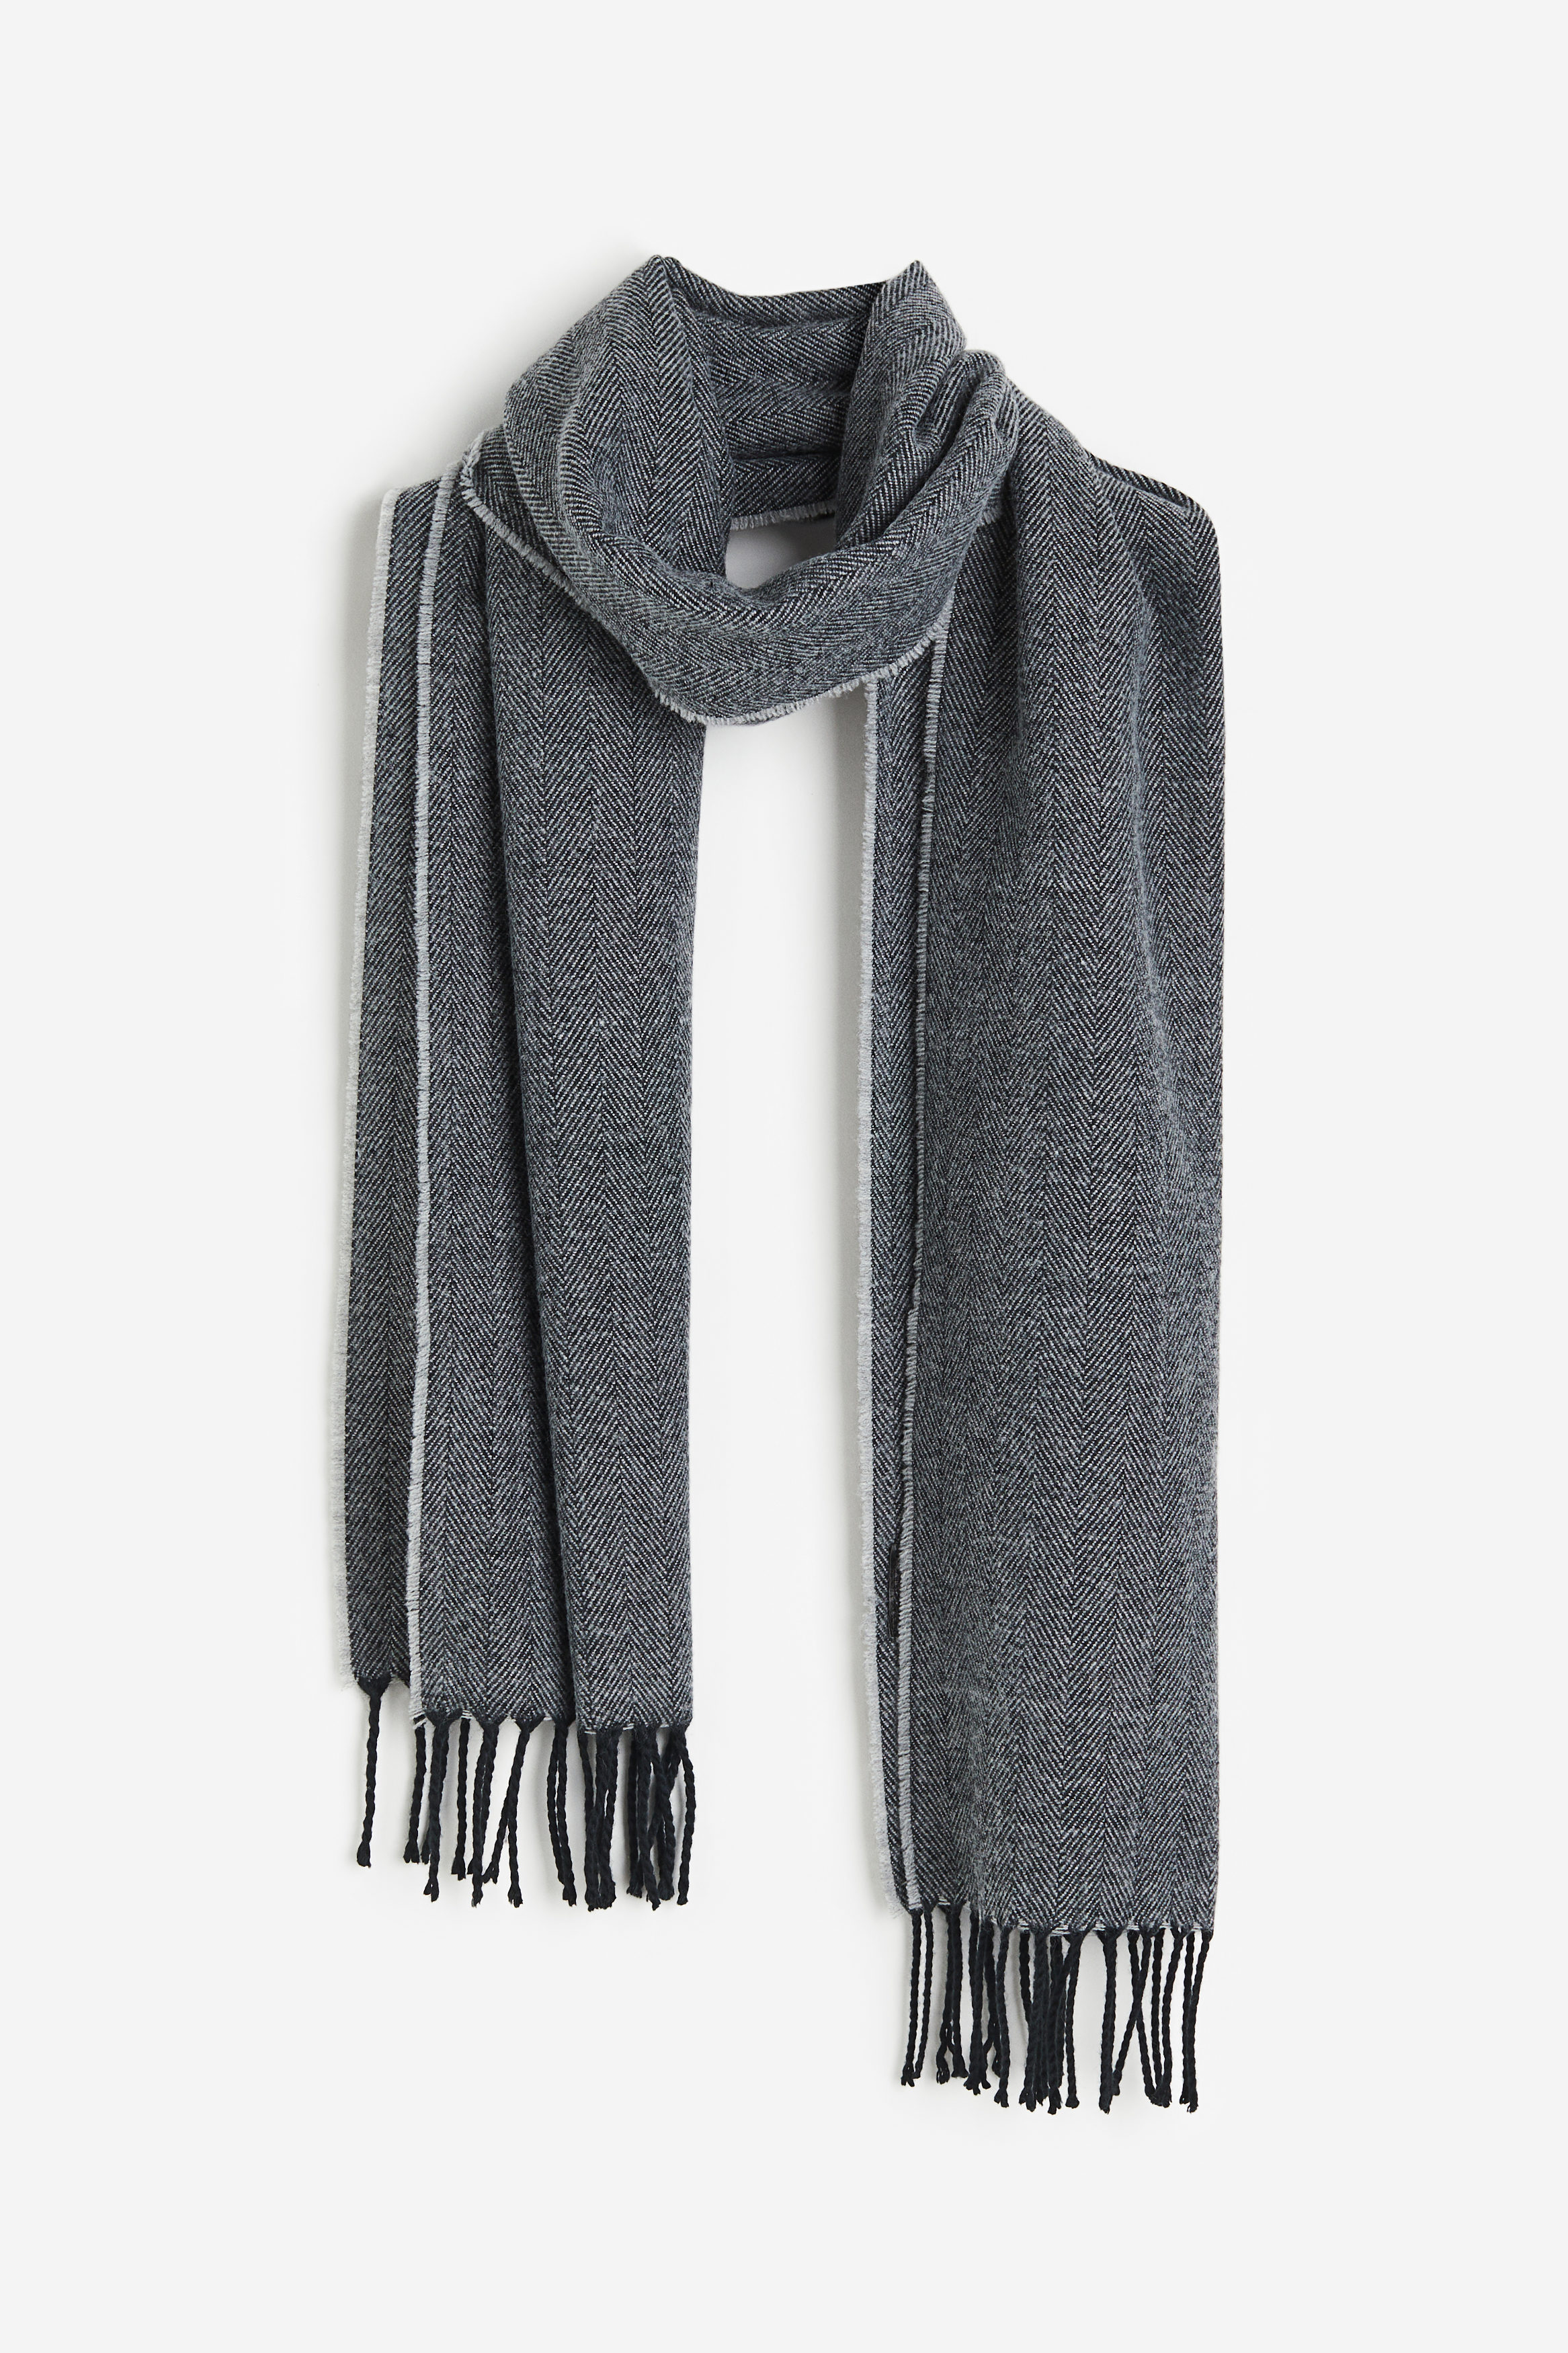 Billede af H&M Mønstret Halstørklæde Grå/sildebensmønstret, Halstørklæder. Farve: Grey/herringbone-patterned I størrelse Onesize